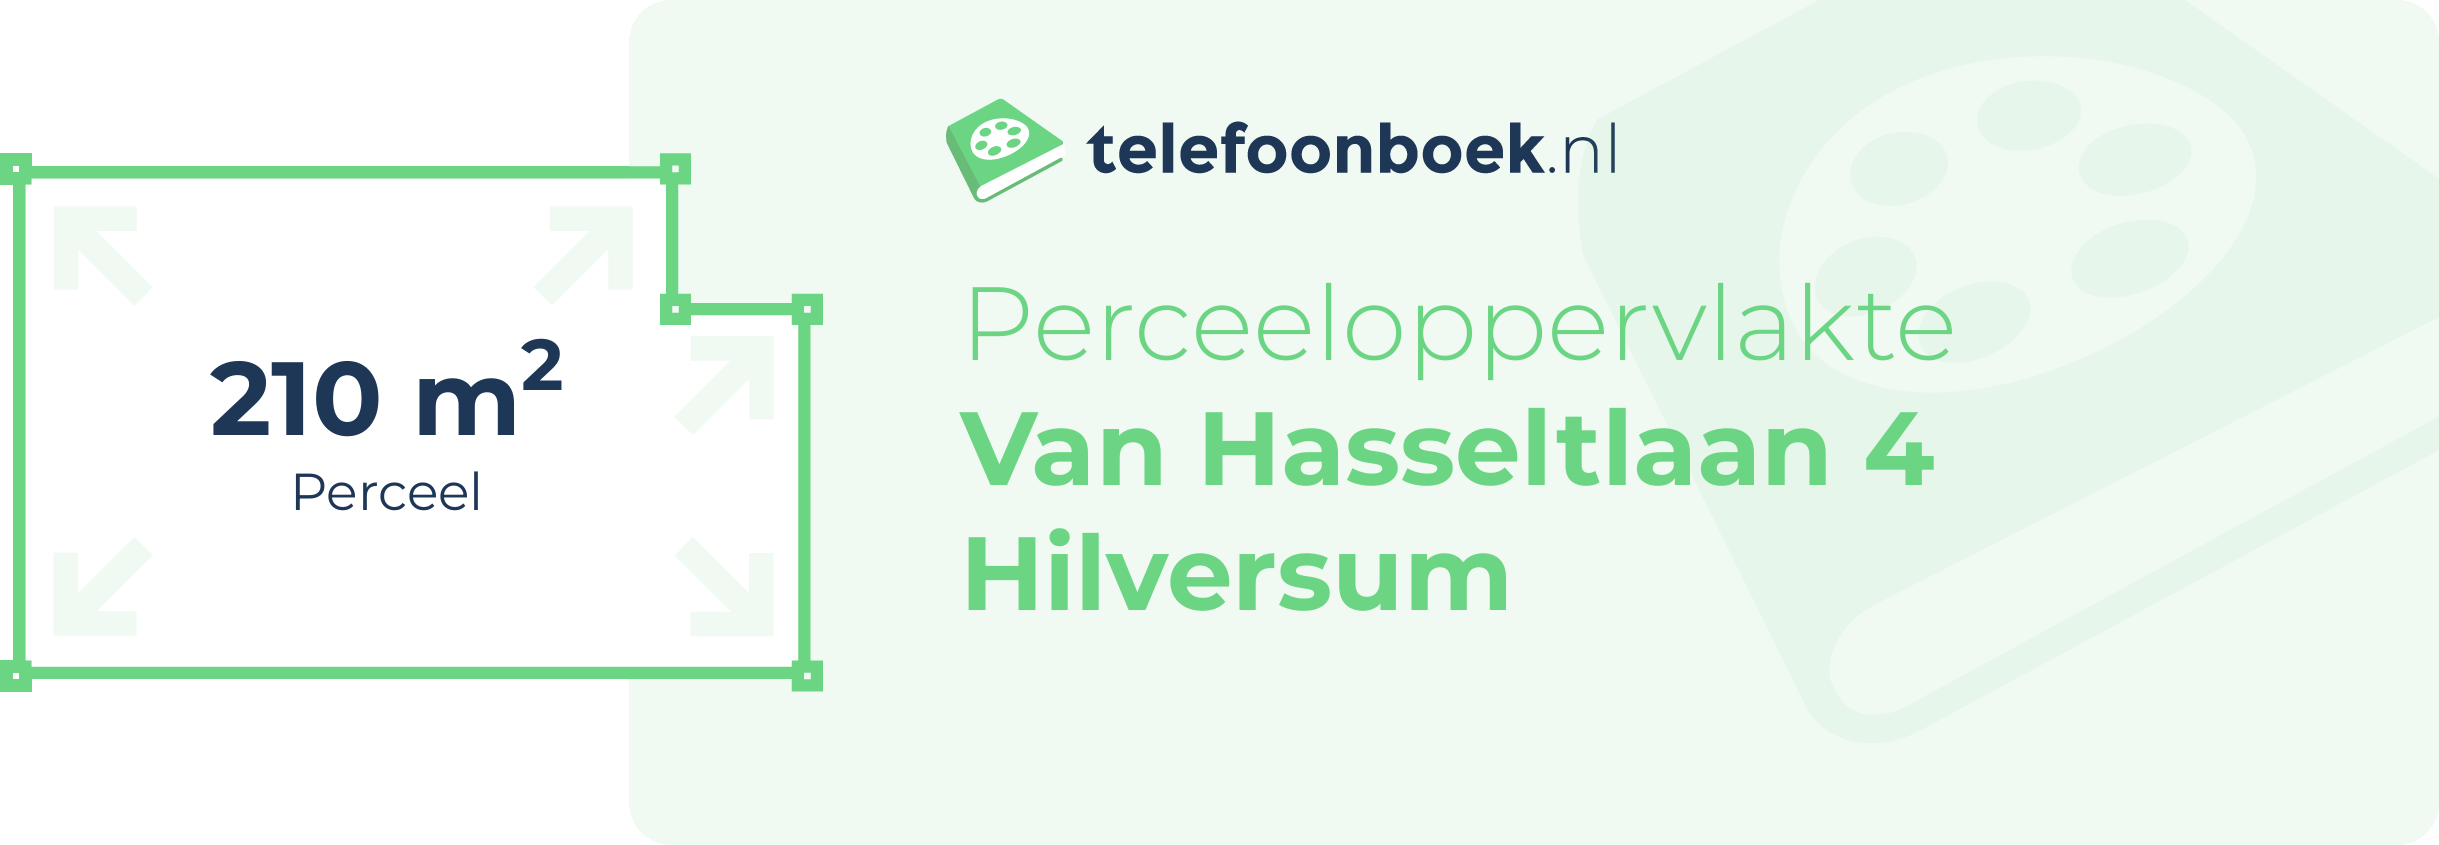 Perceeloppervlakte Van Hasseltlaan 4 Hilversum